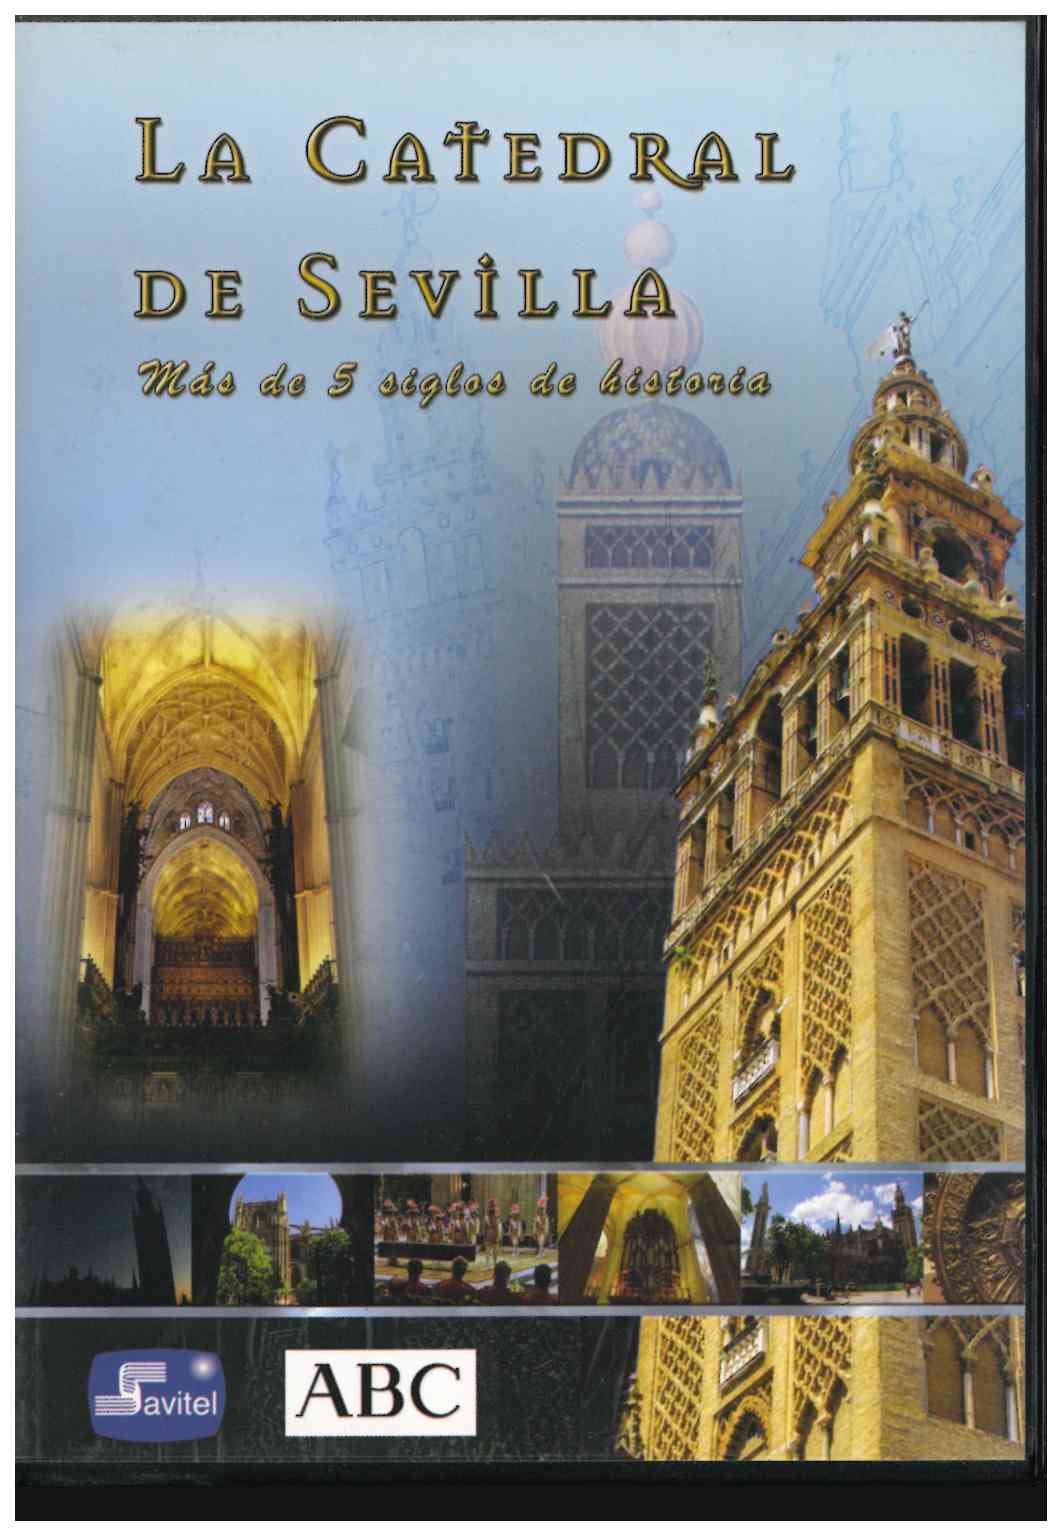 La Catedral de Sevilla. Mas de cinco siglos de historia. 3 DVD editados por ABC/Savitel. 2006